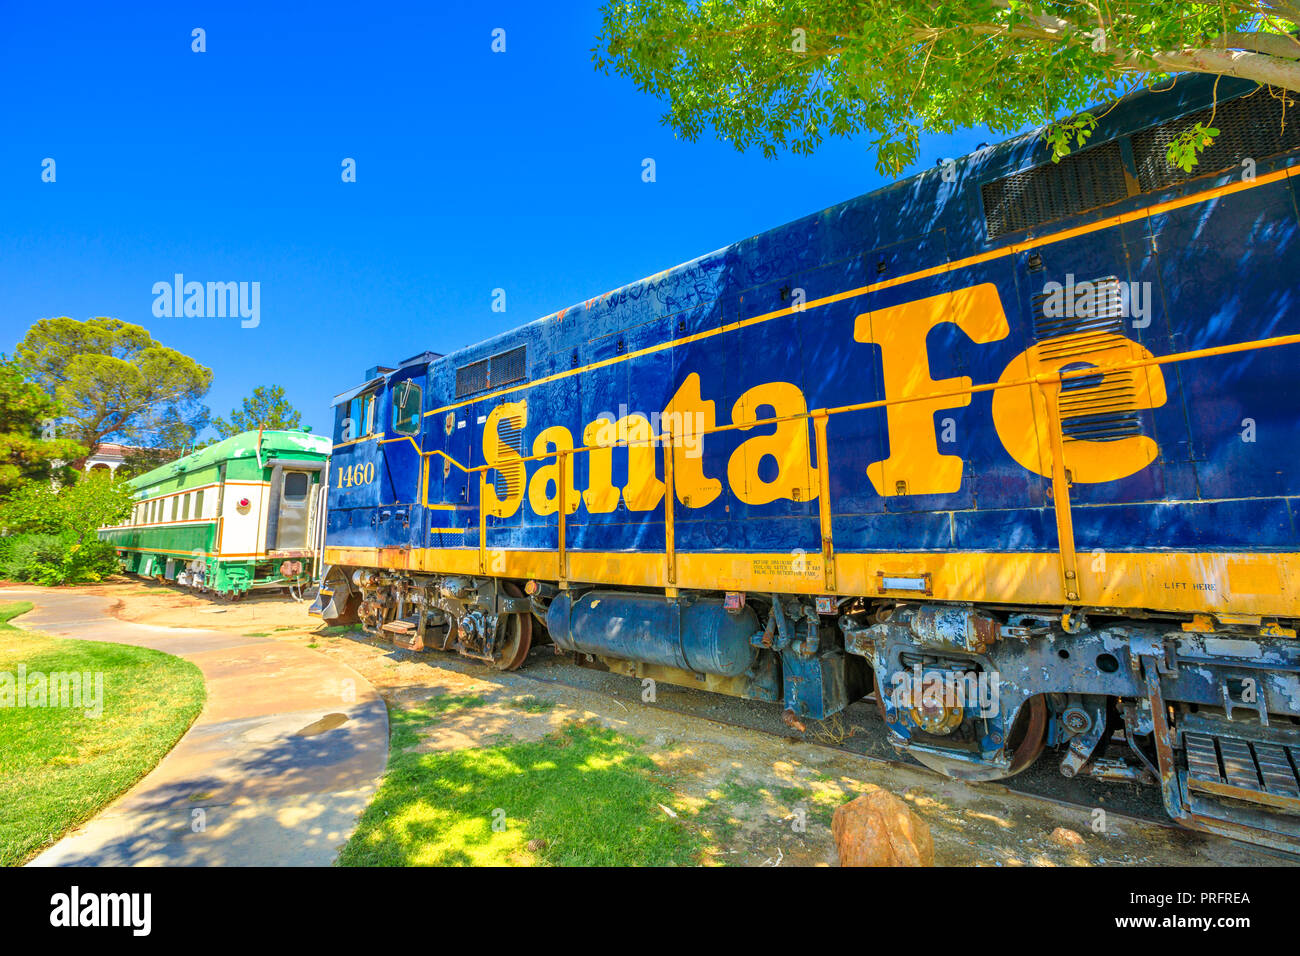 Barstow, Kalifornien, USA - 15. August 2018: Santa Fe Wagen am Western America Railroad Museum in der Nähe von Harvey Haus Railroad Depotis zur Geschichte der Eisenbahn im Pacific Southwest gewidmet. Stockfoto